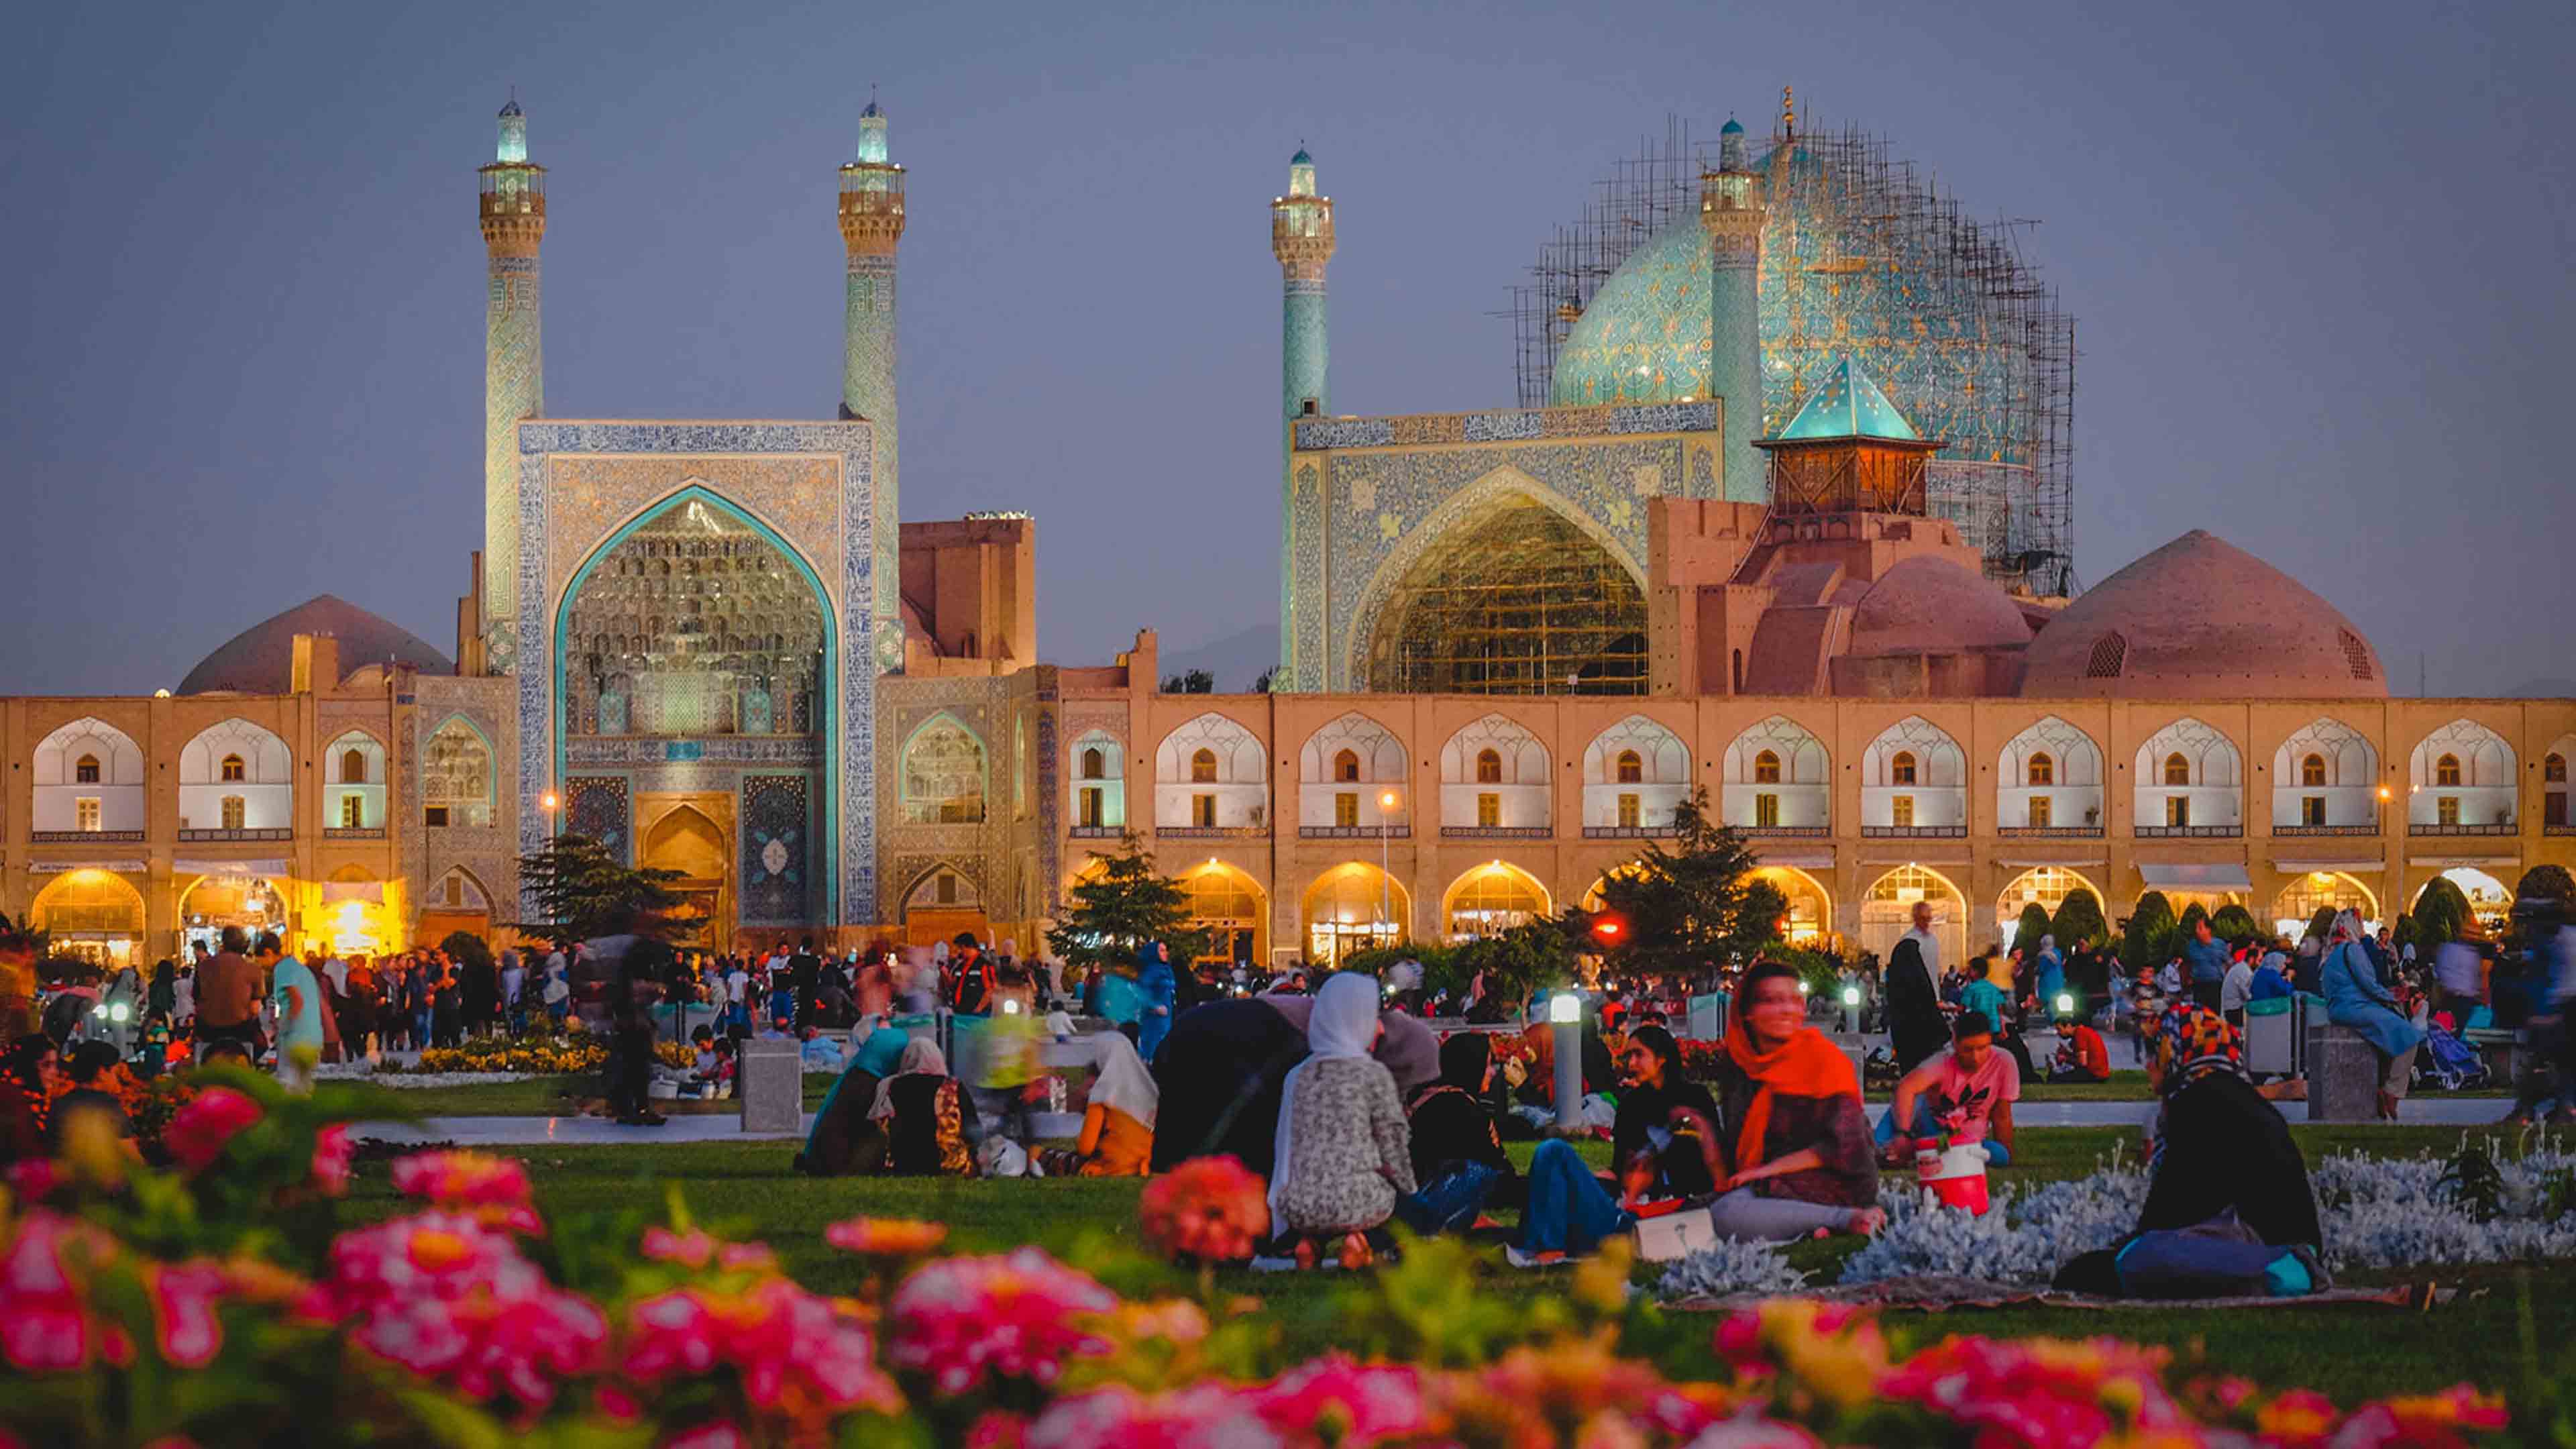    Площадь Накш-э Джахан - Исфахан, Иран